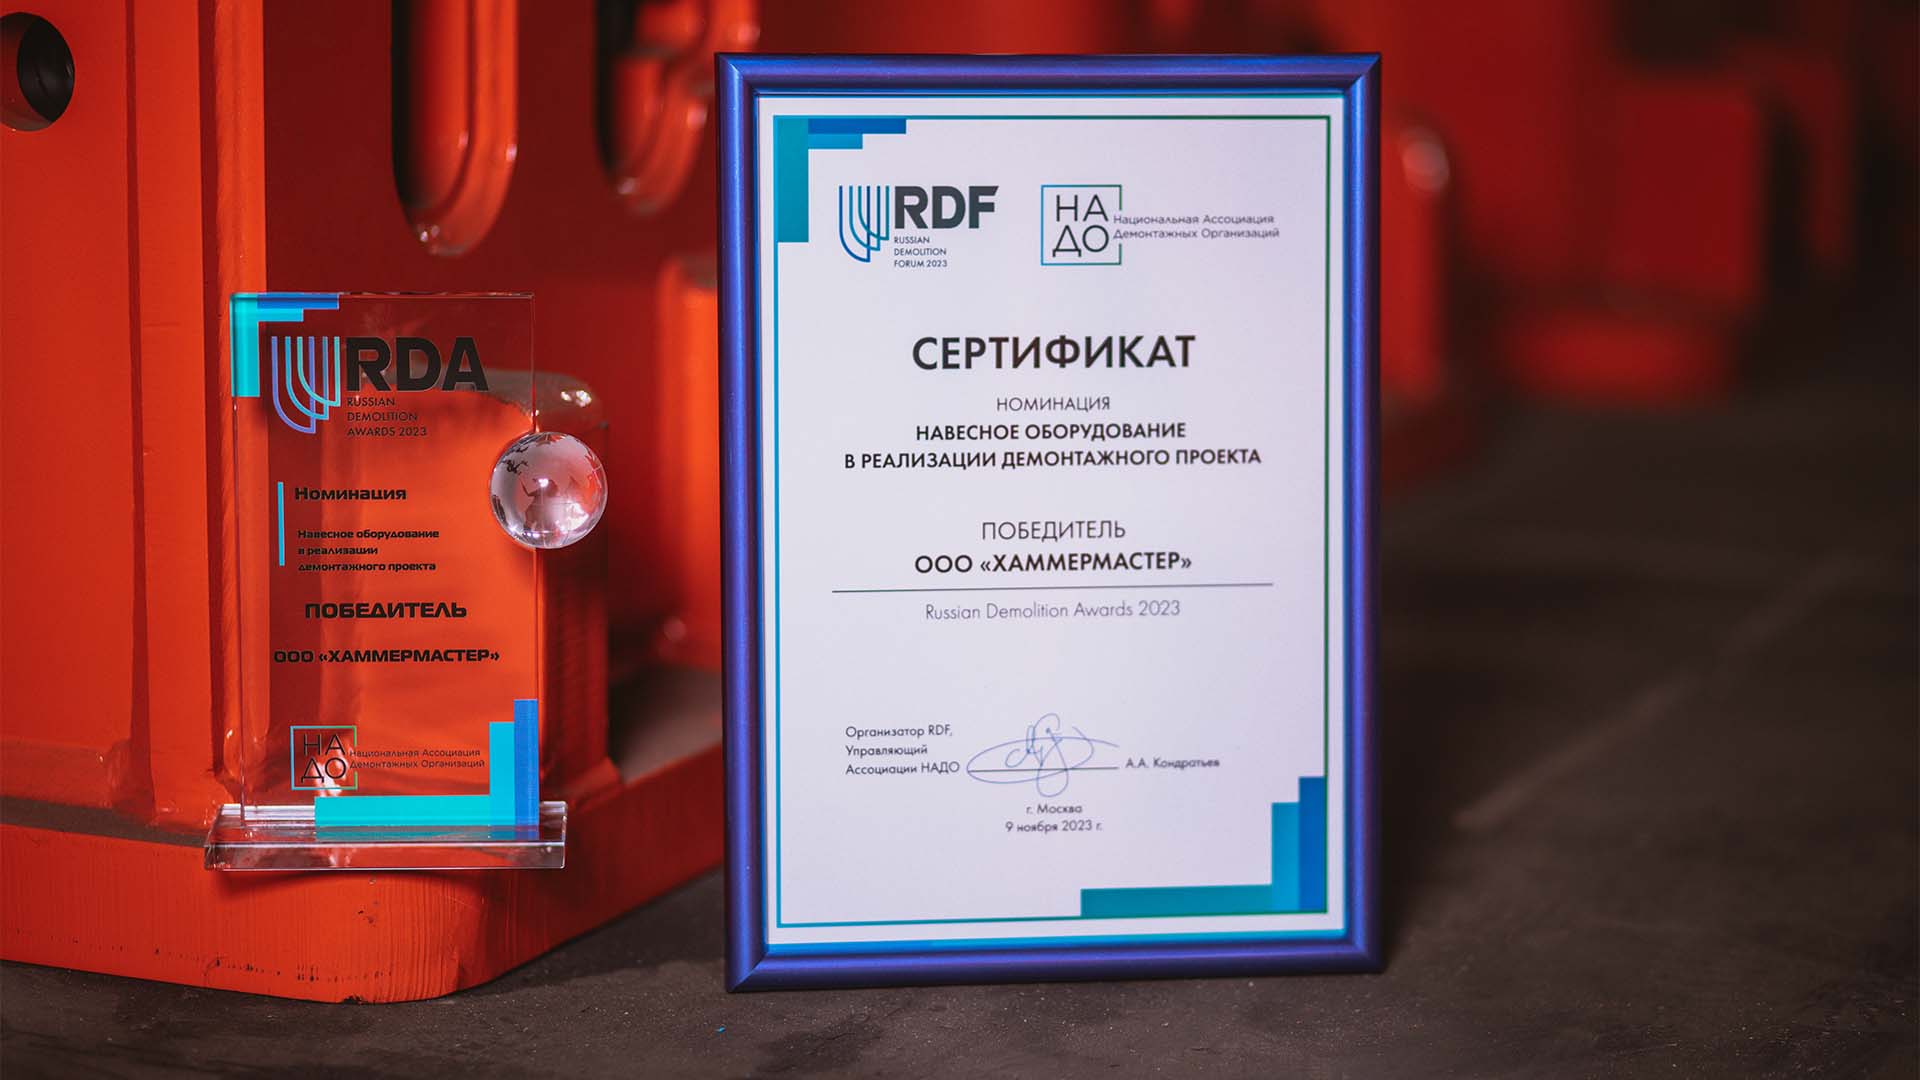 Фотография сертификата победителя в номинации Навесное оборудование в реализации демонтажного проекта, которой удостоилась компания HammerMaster